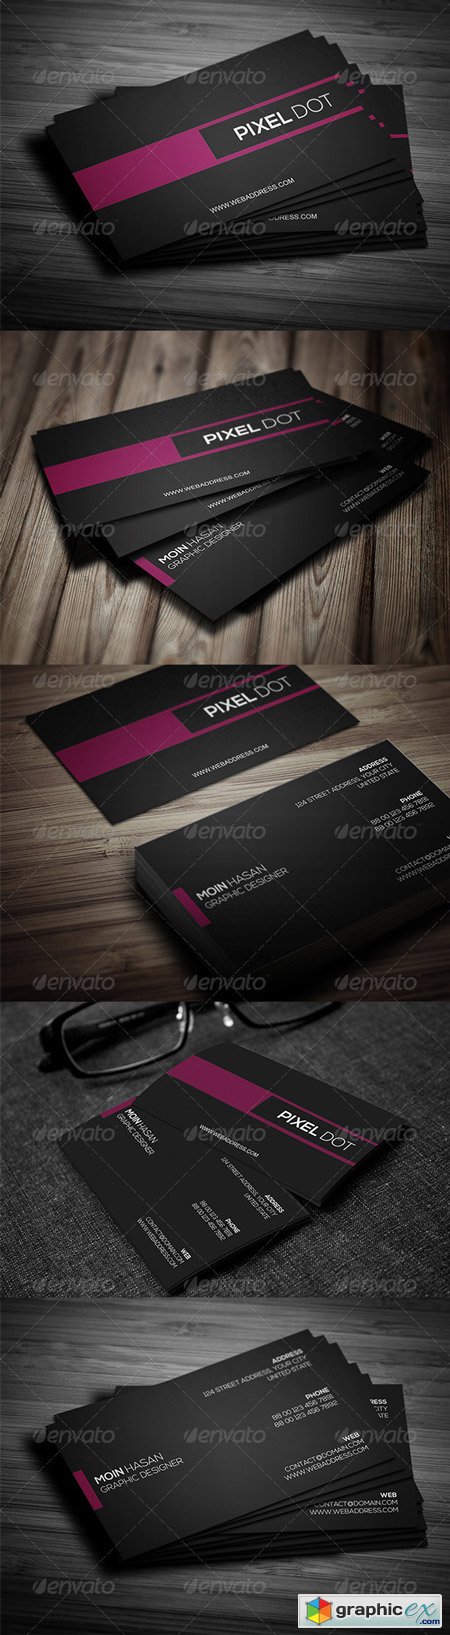 Corporate Business Card Design 09